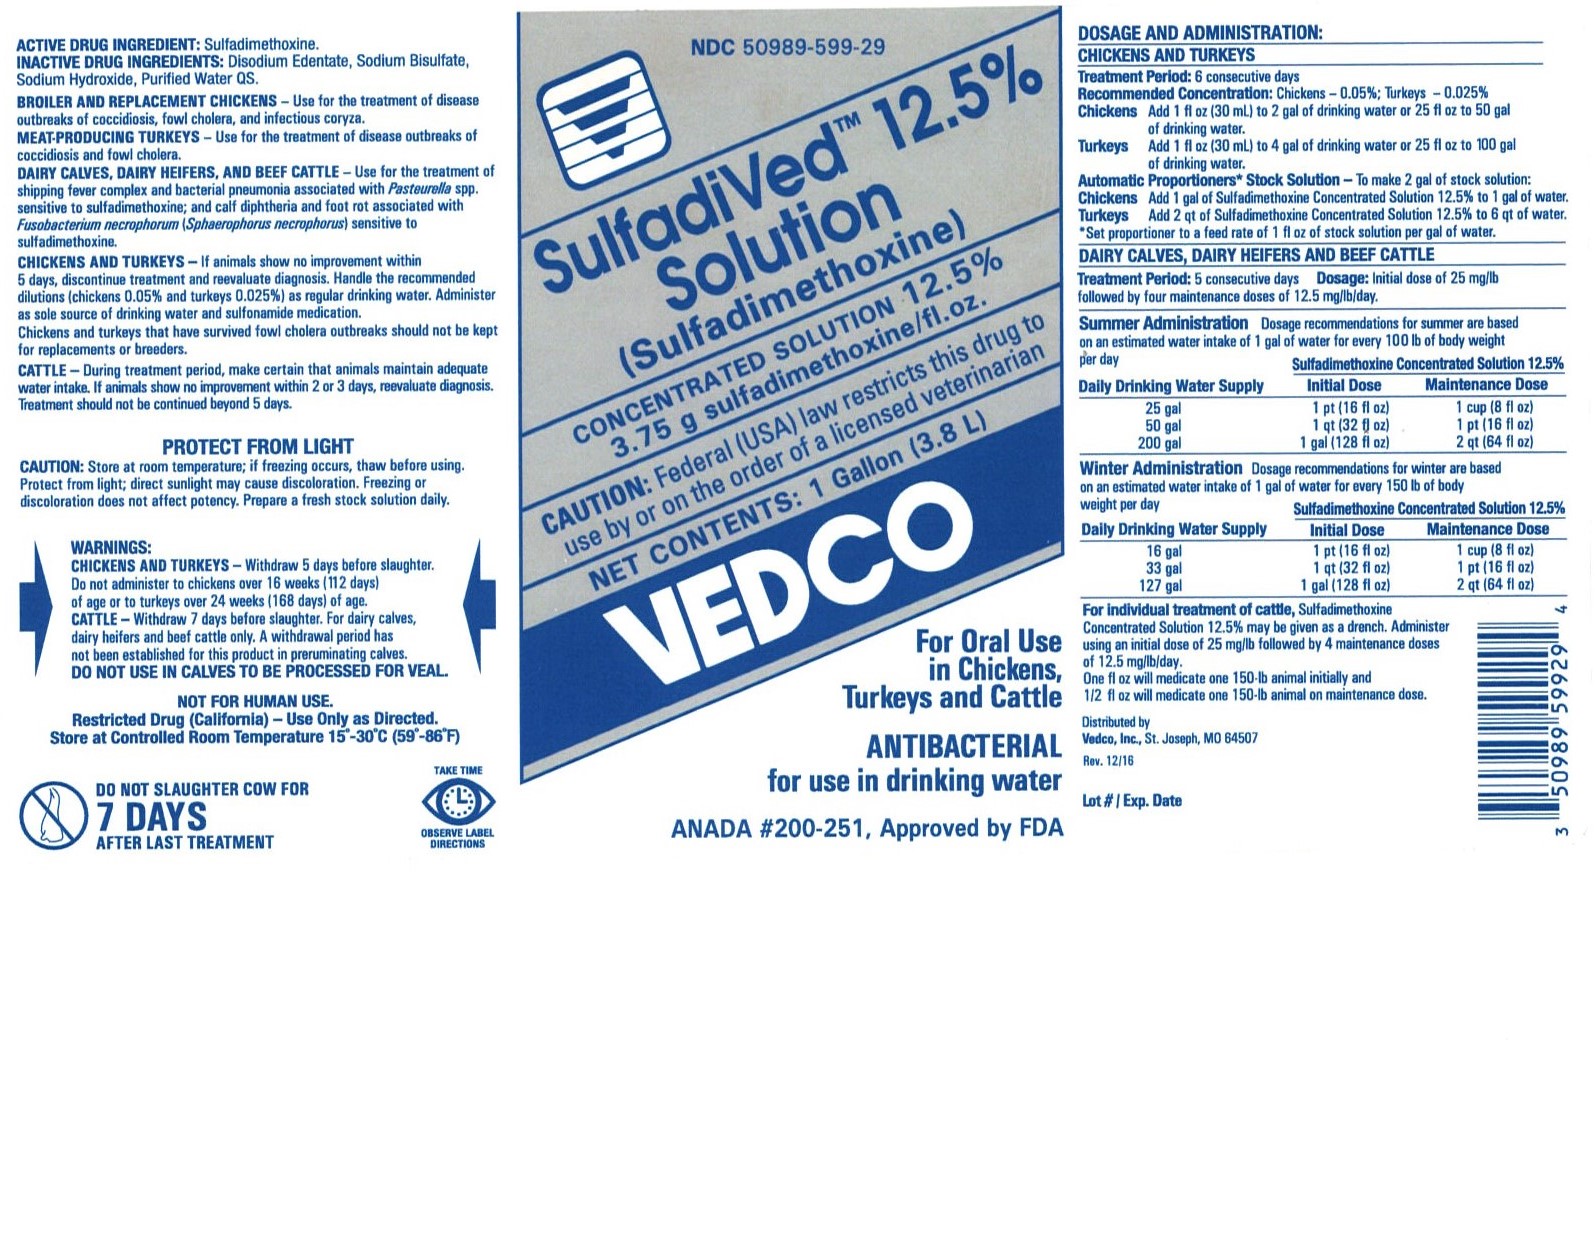 Sulforal 1Gallon Vedco Label